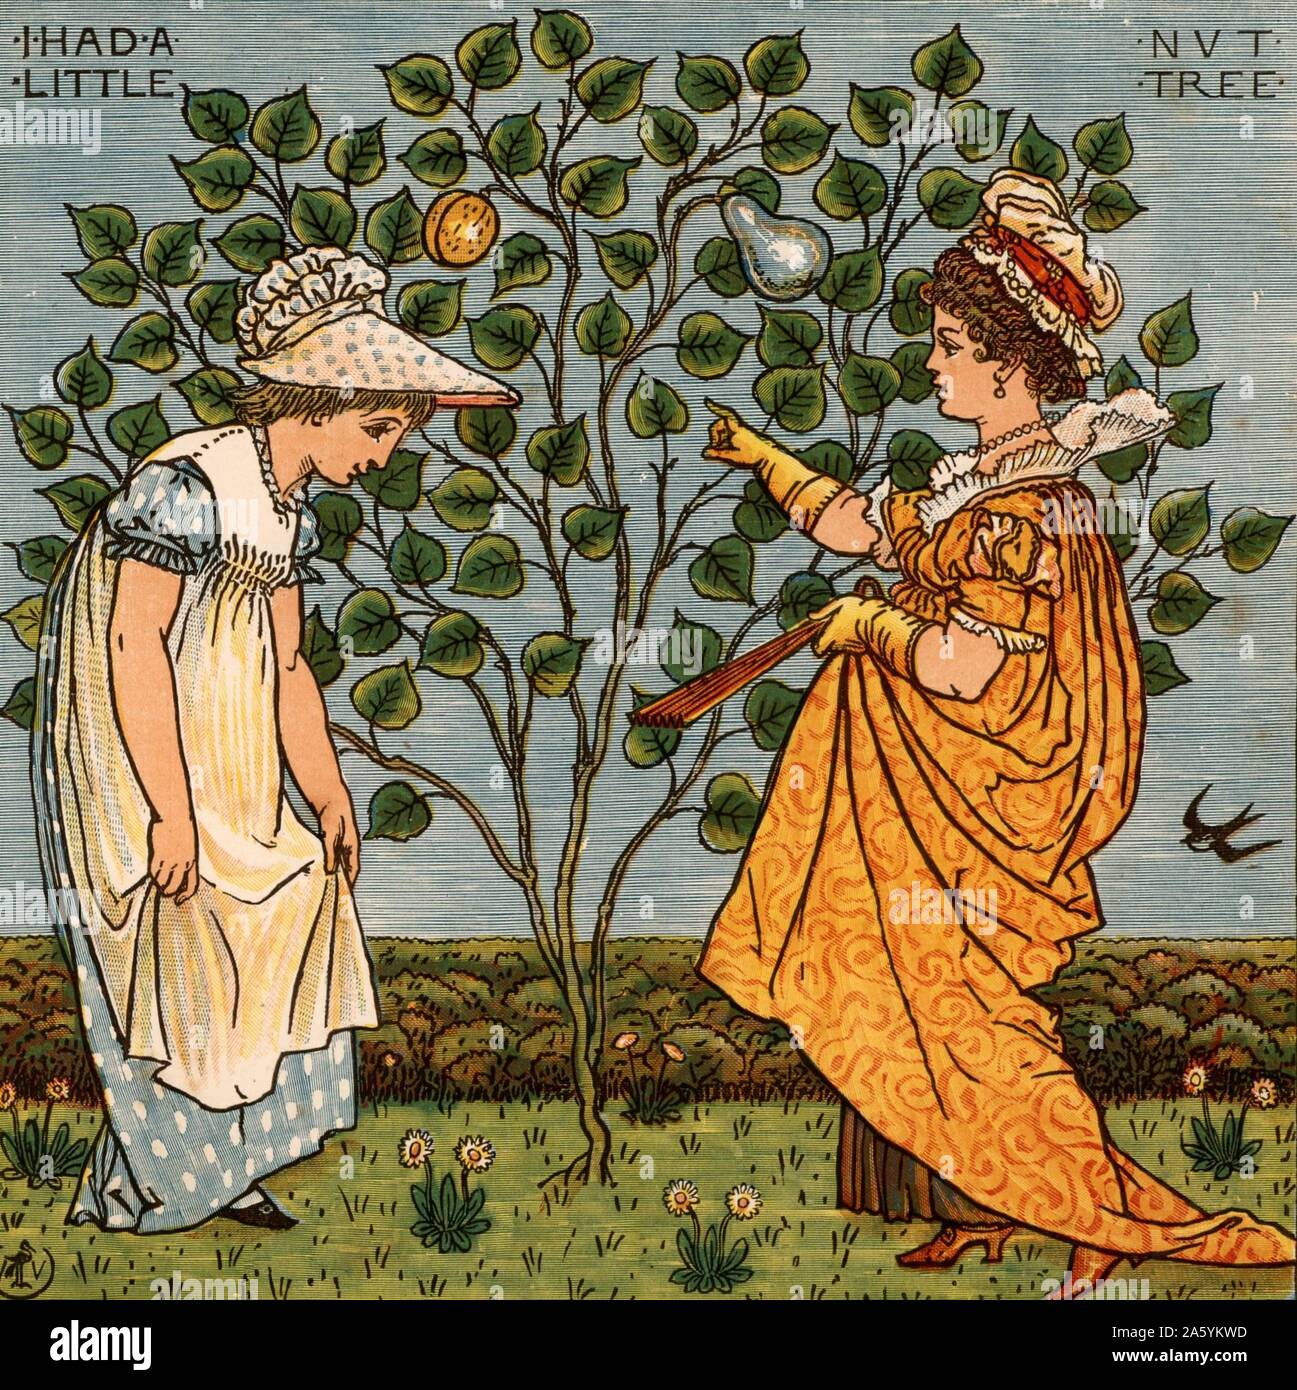 Ich hatte ein wenig Nuss und nichts würde es tragen. Abbildung des englischen Künstlers Walter Crane (1845-1915) für ein Buch der Kinderreime von Ing ein Lied von Sixpence" (London, 1866). Farbe gedruckten Holzstich. Stockfoto